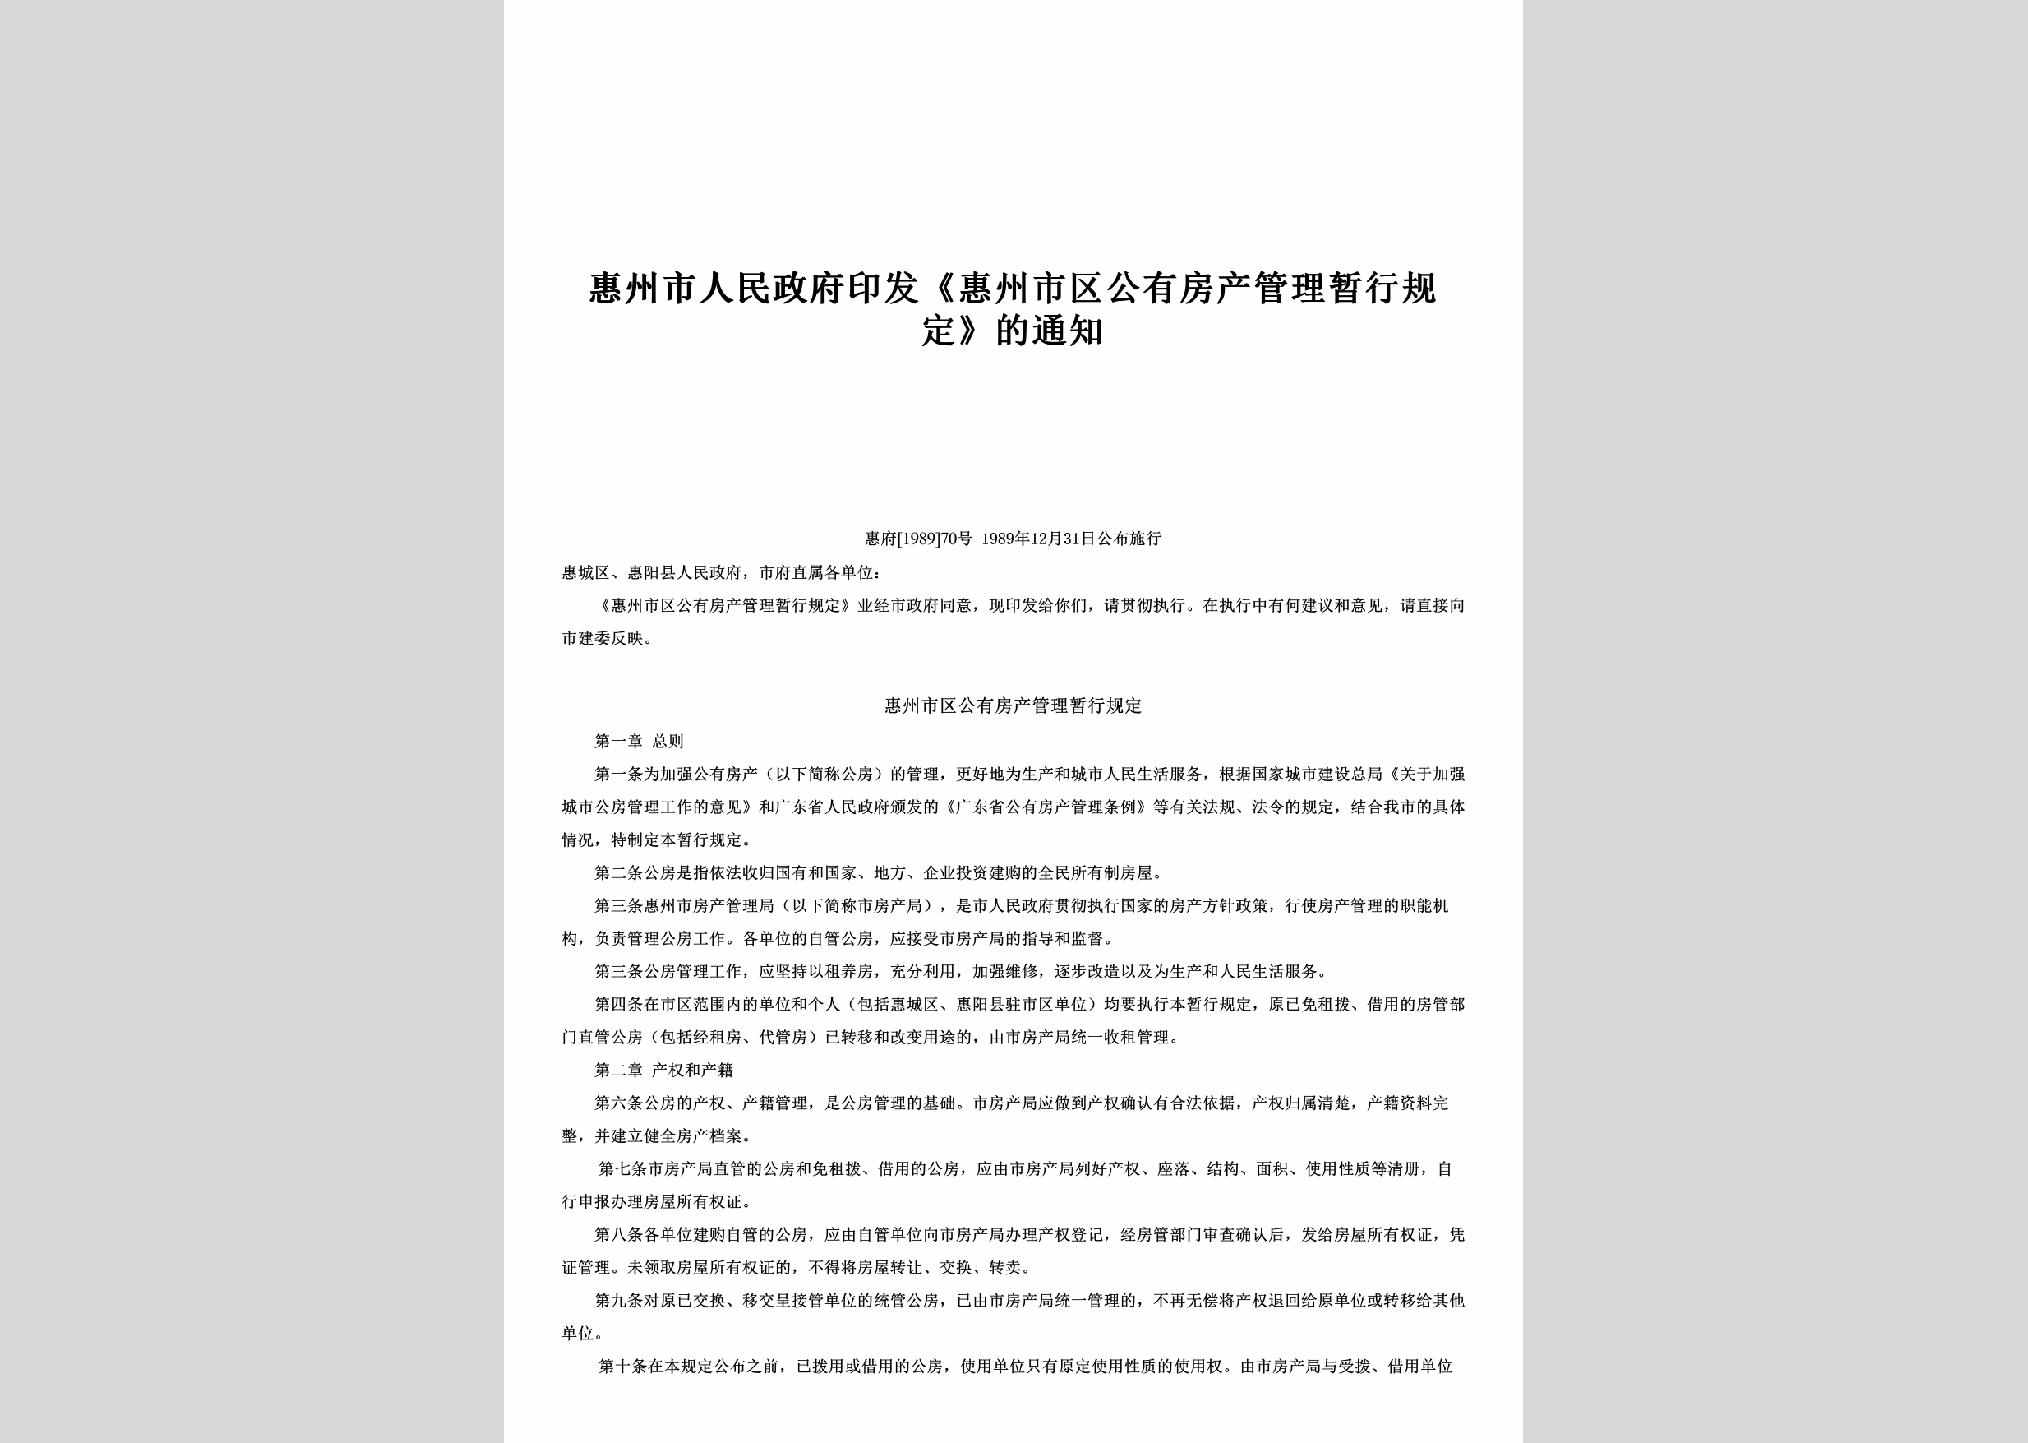 惠府[1989]70号：印发《惠州市区公有房产管理暂行规定》的通知